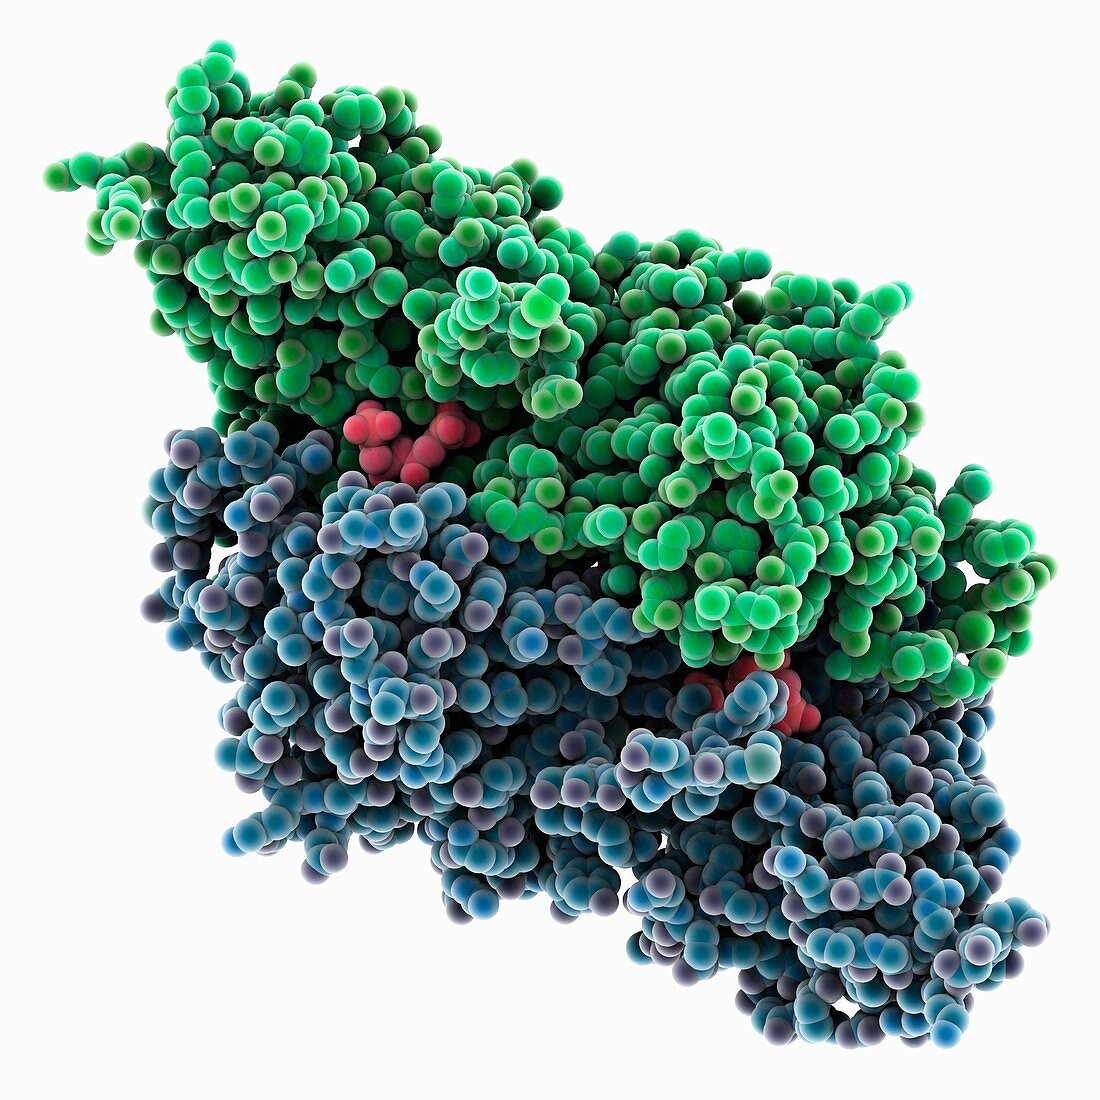 Bacterial rubisco molecule